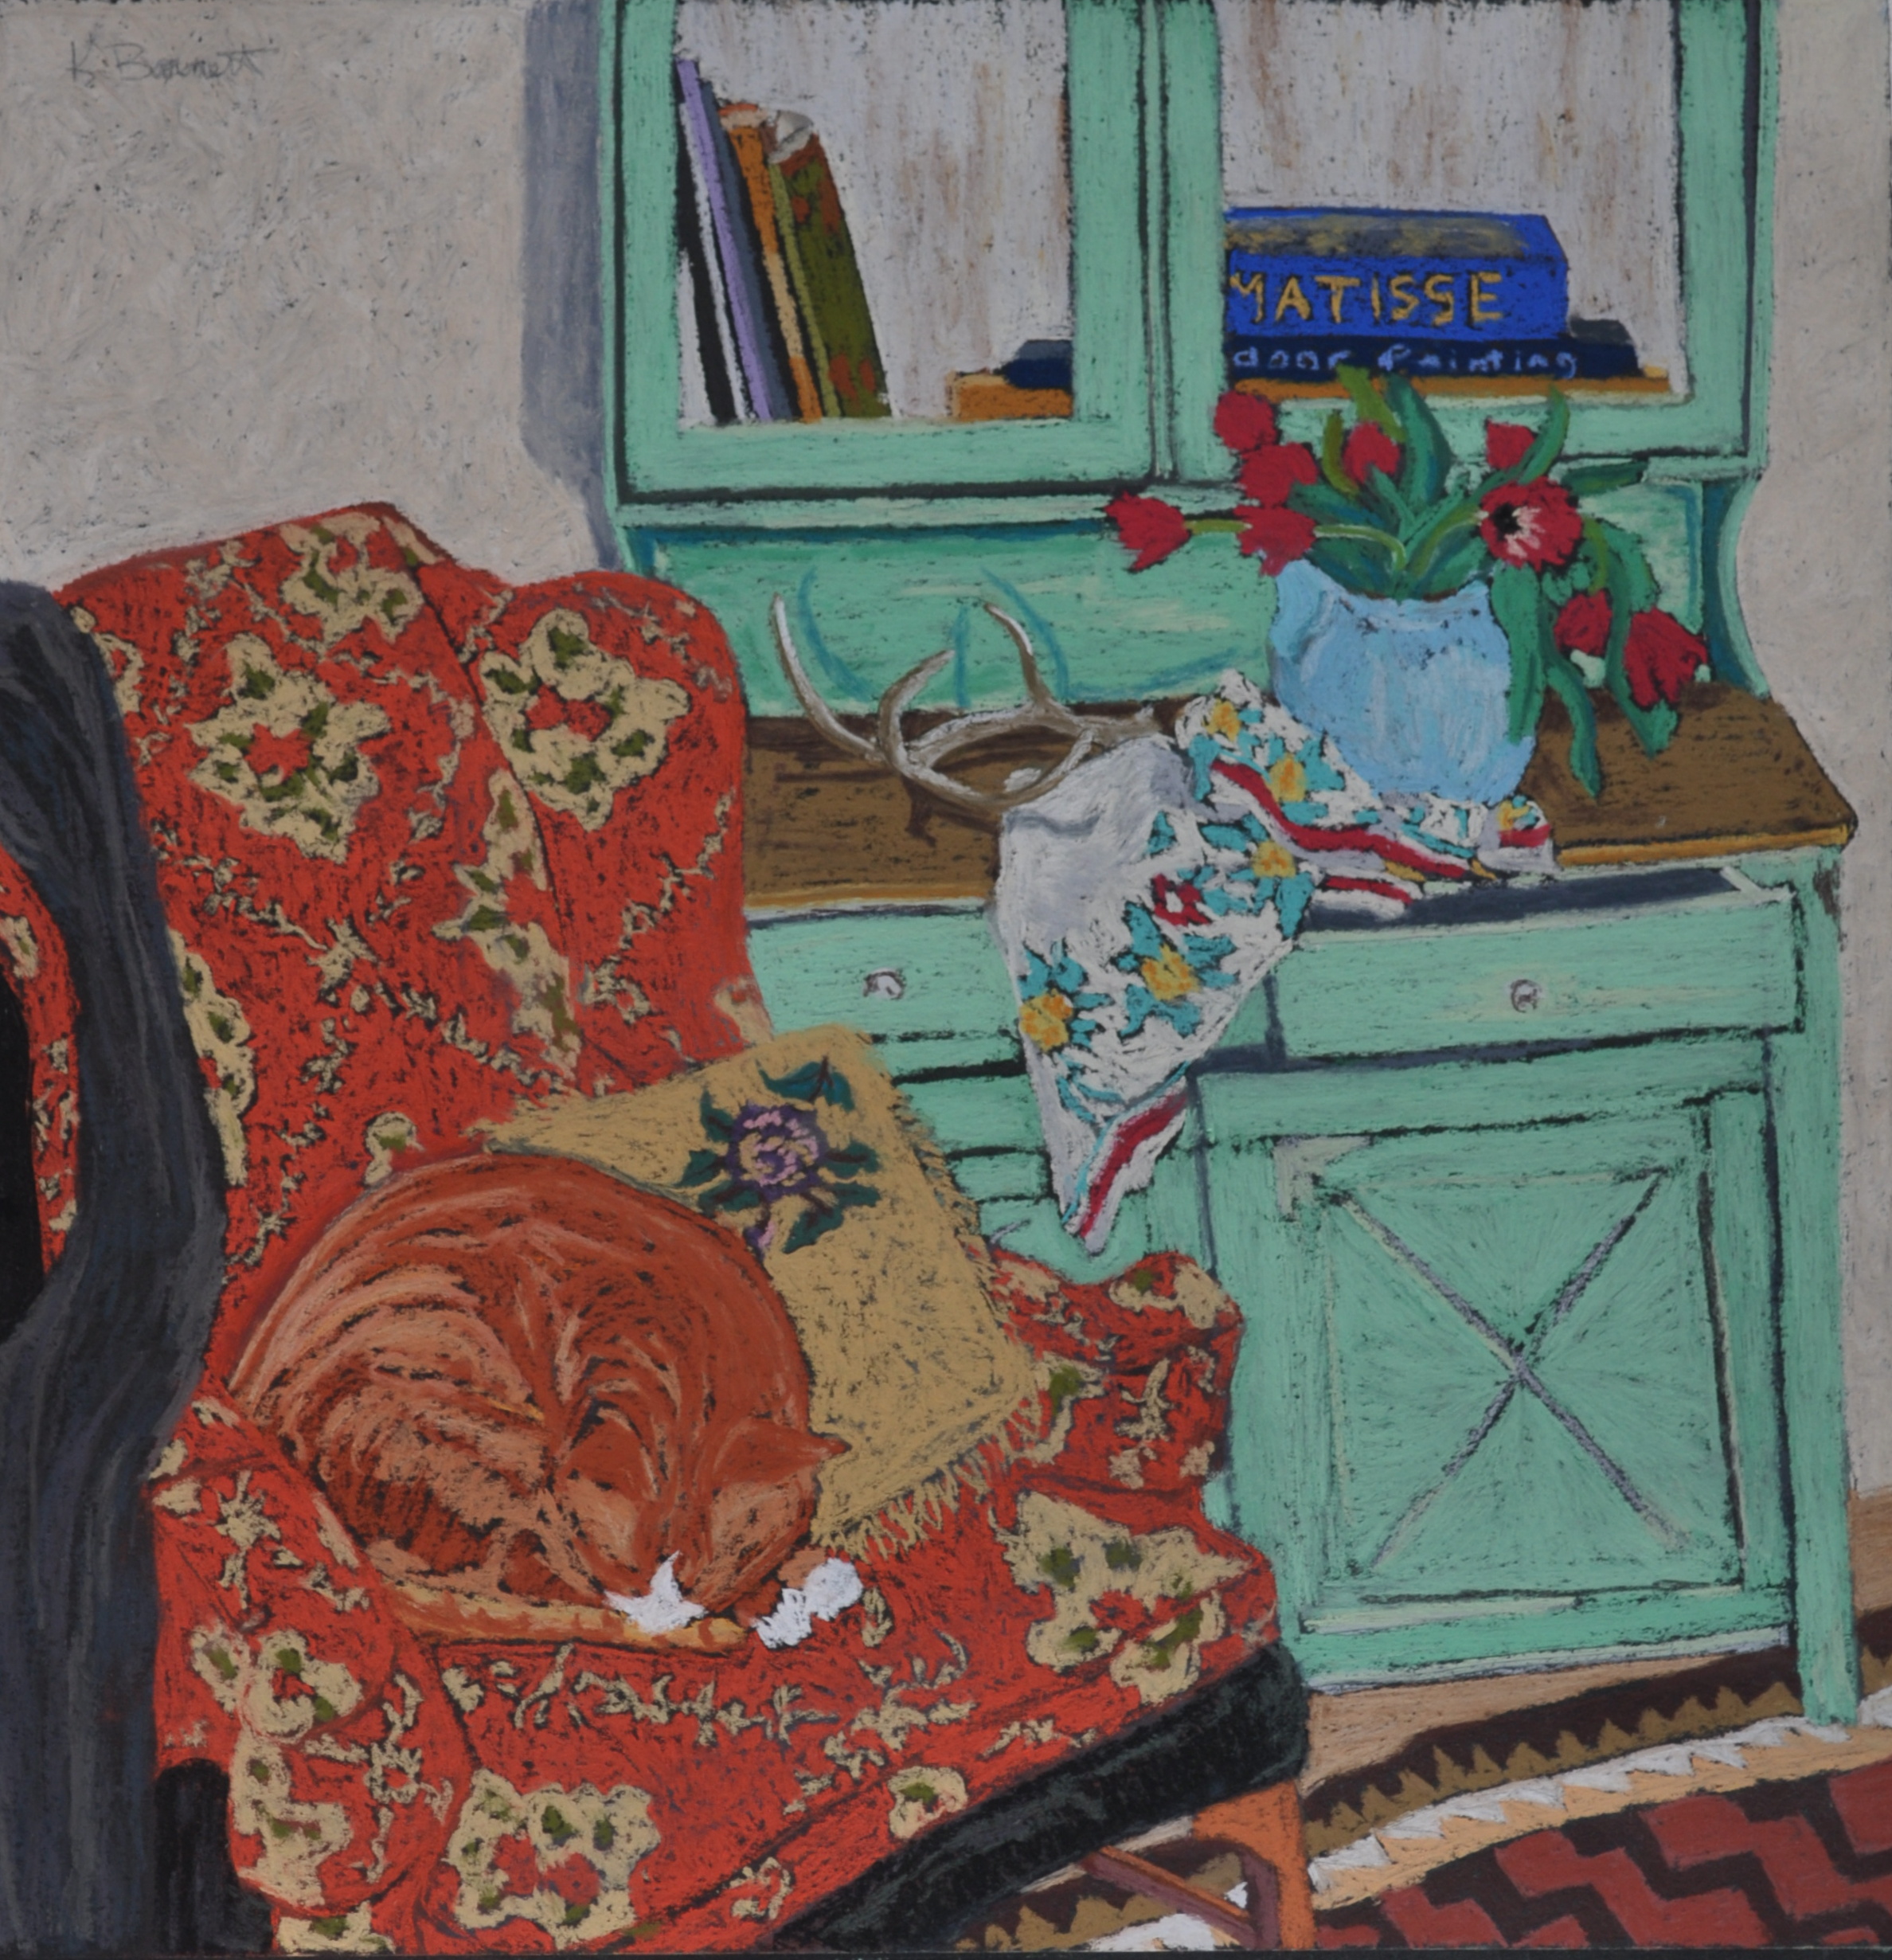 Studio Cat with Matisse